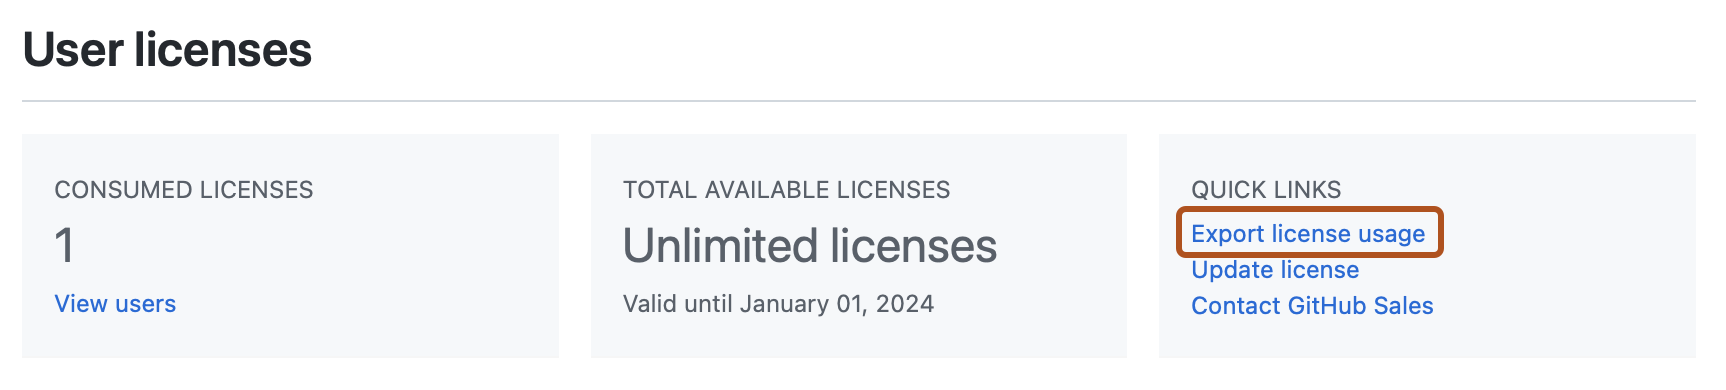 Captura de pantalla de la sección "Licencias de usuario" de la página "Licencia". Un vínculo, con la etiqueta "Exportar uso de licencia", está resaltado en naranja oscuro.